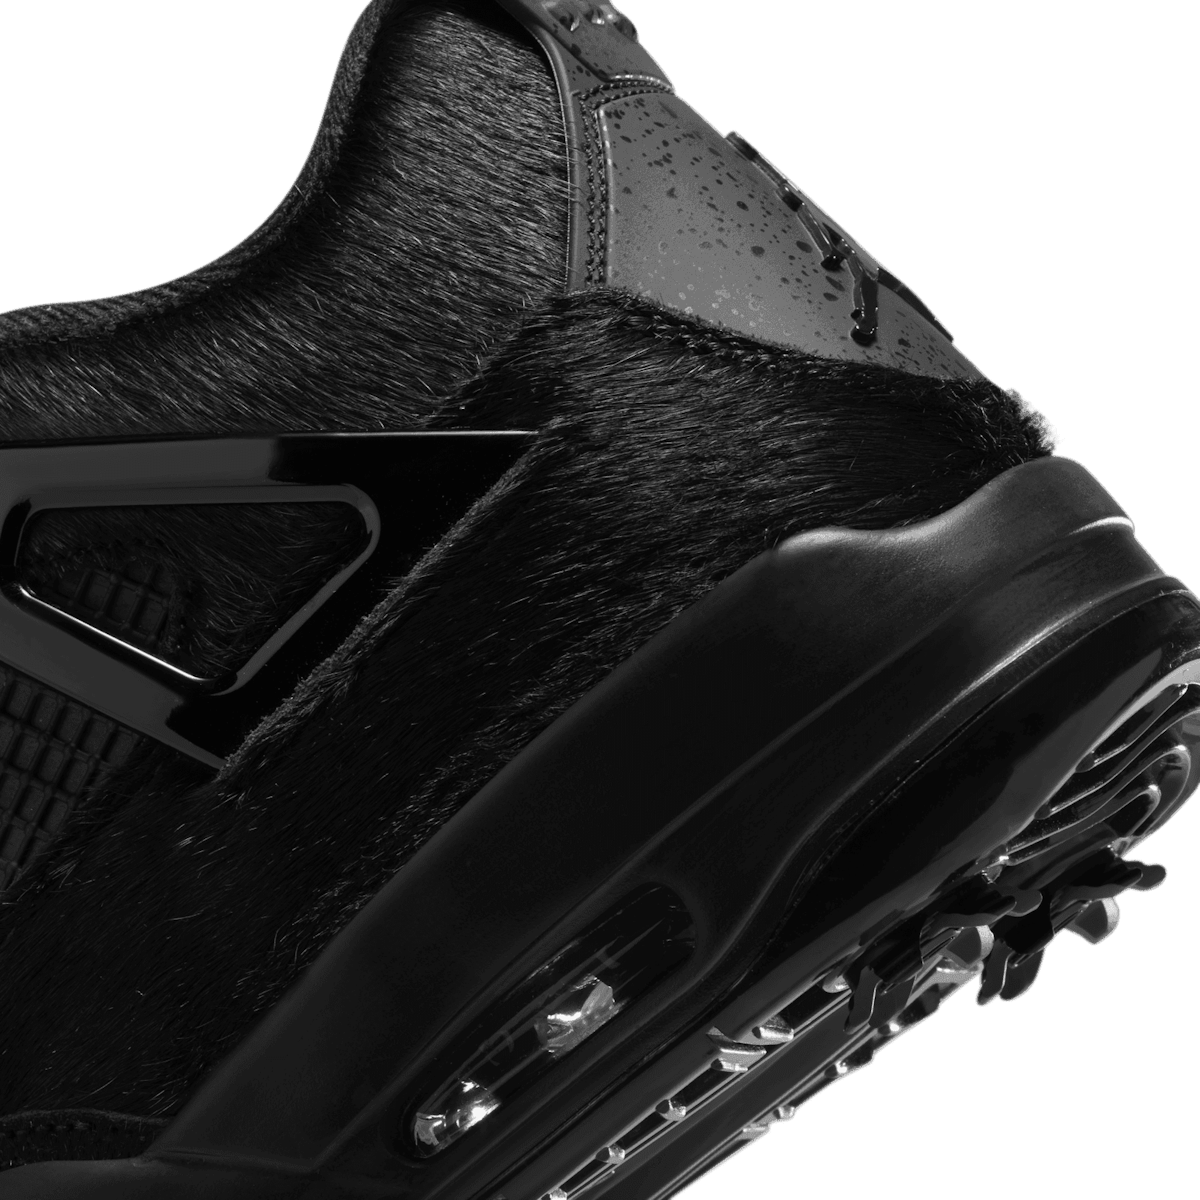 Air Jordan 4 Golf Black Cat CU9981-001 Release Date - SBD